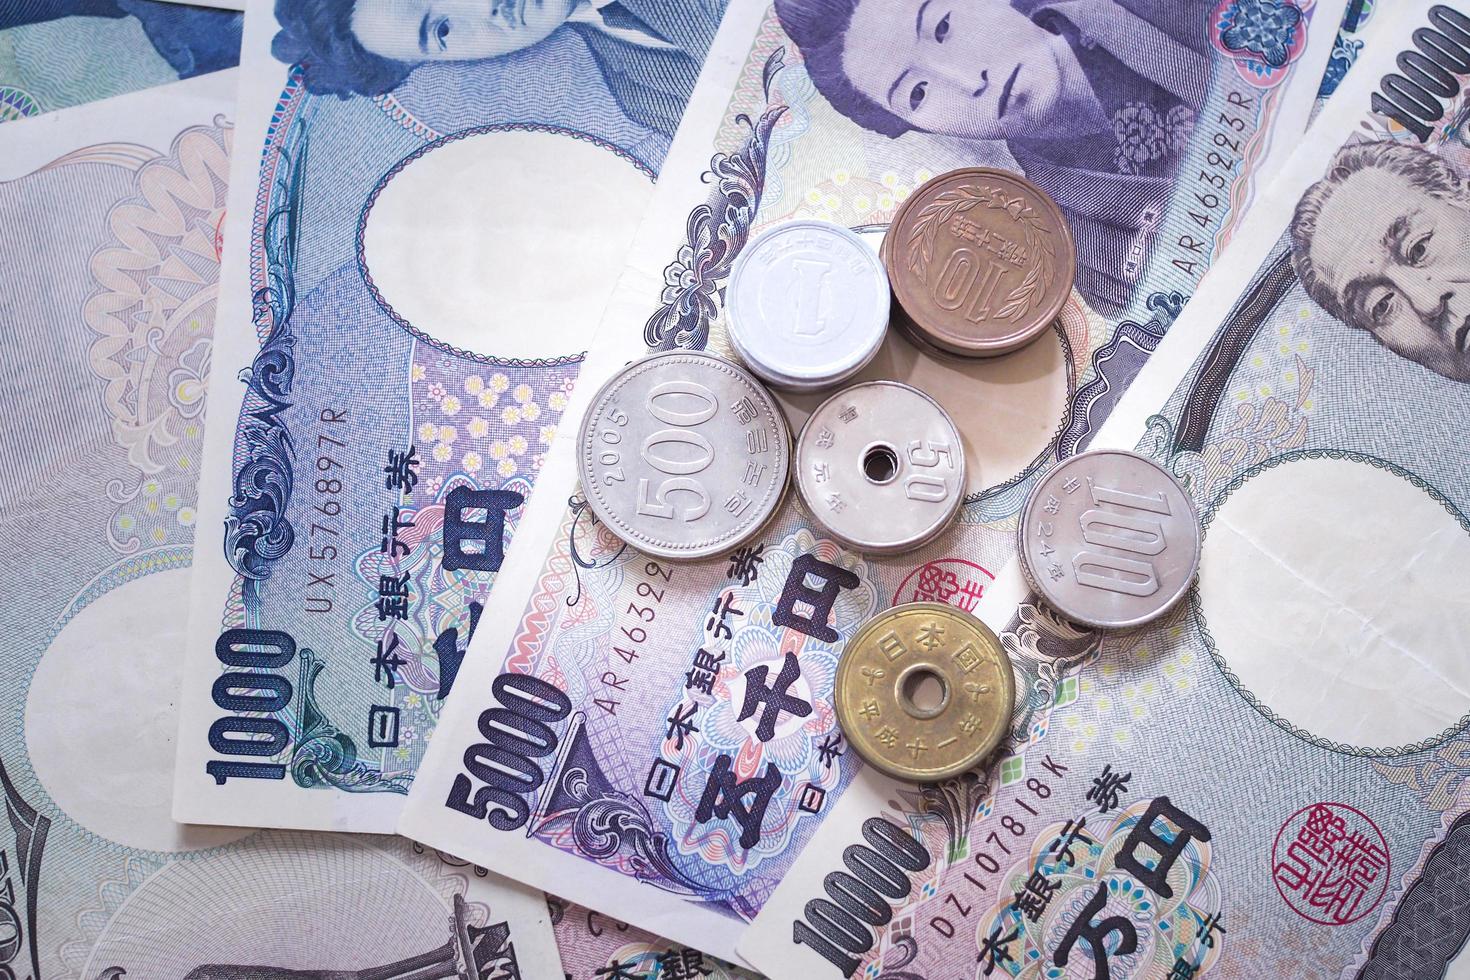 Japans yen aantekeningen en Japans yen munten voor geld concept achtergrond foto